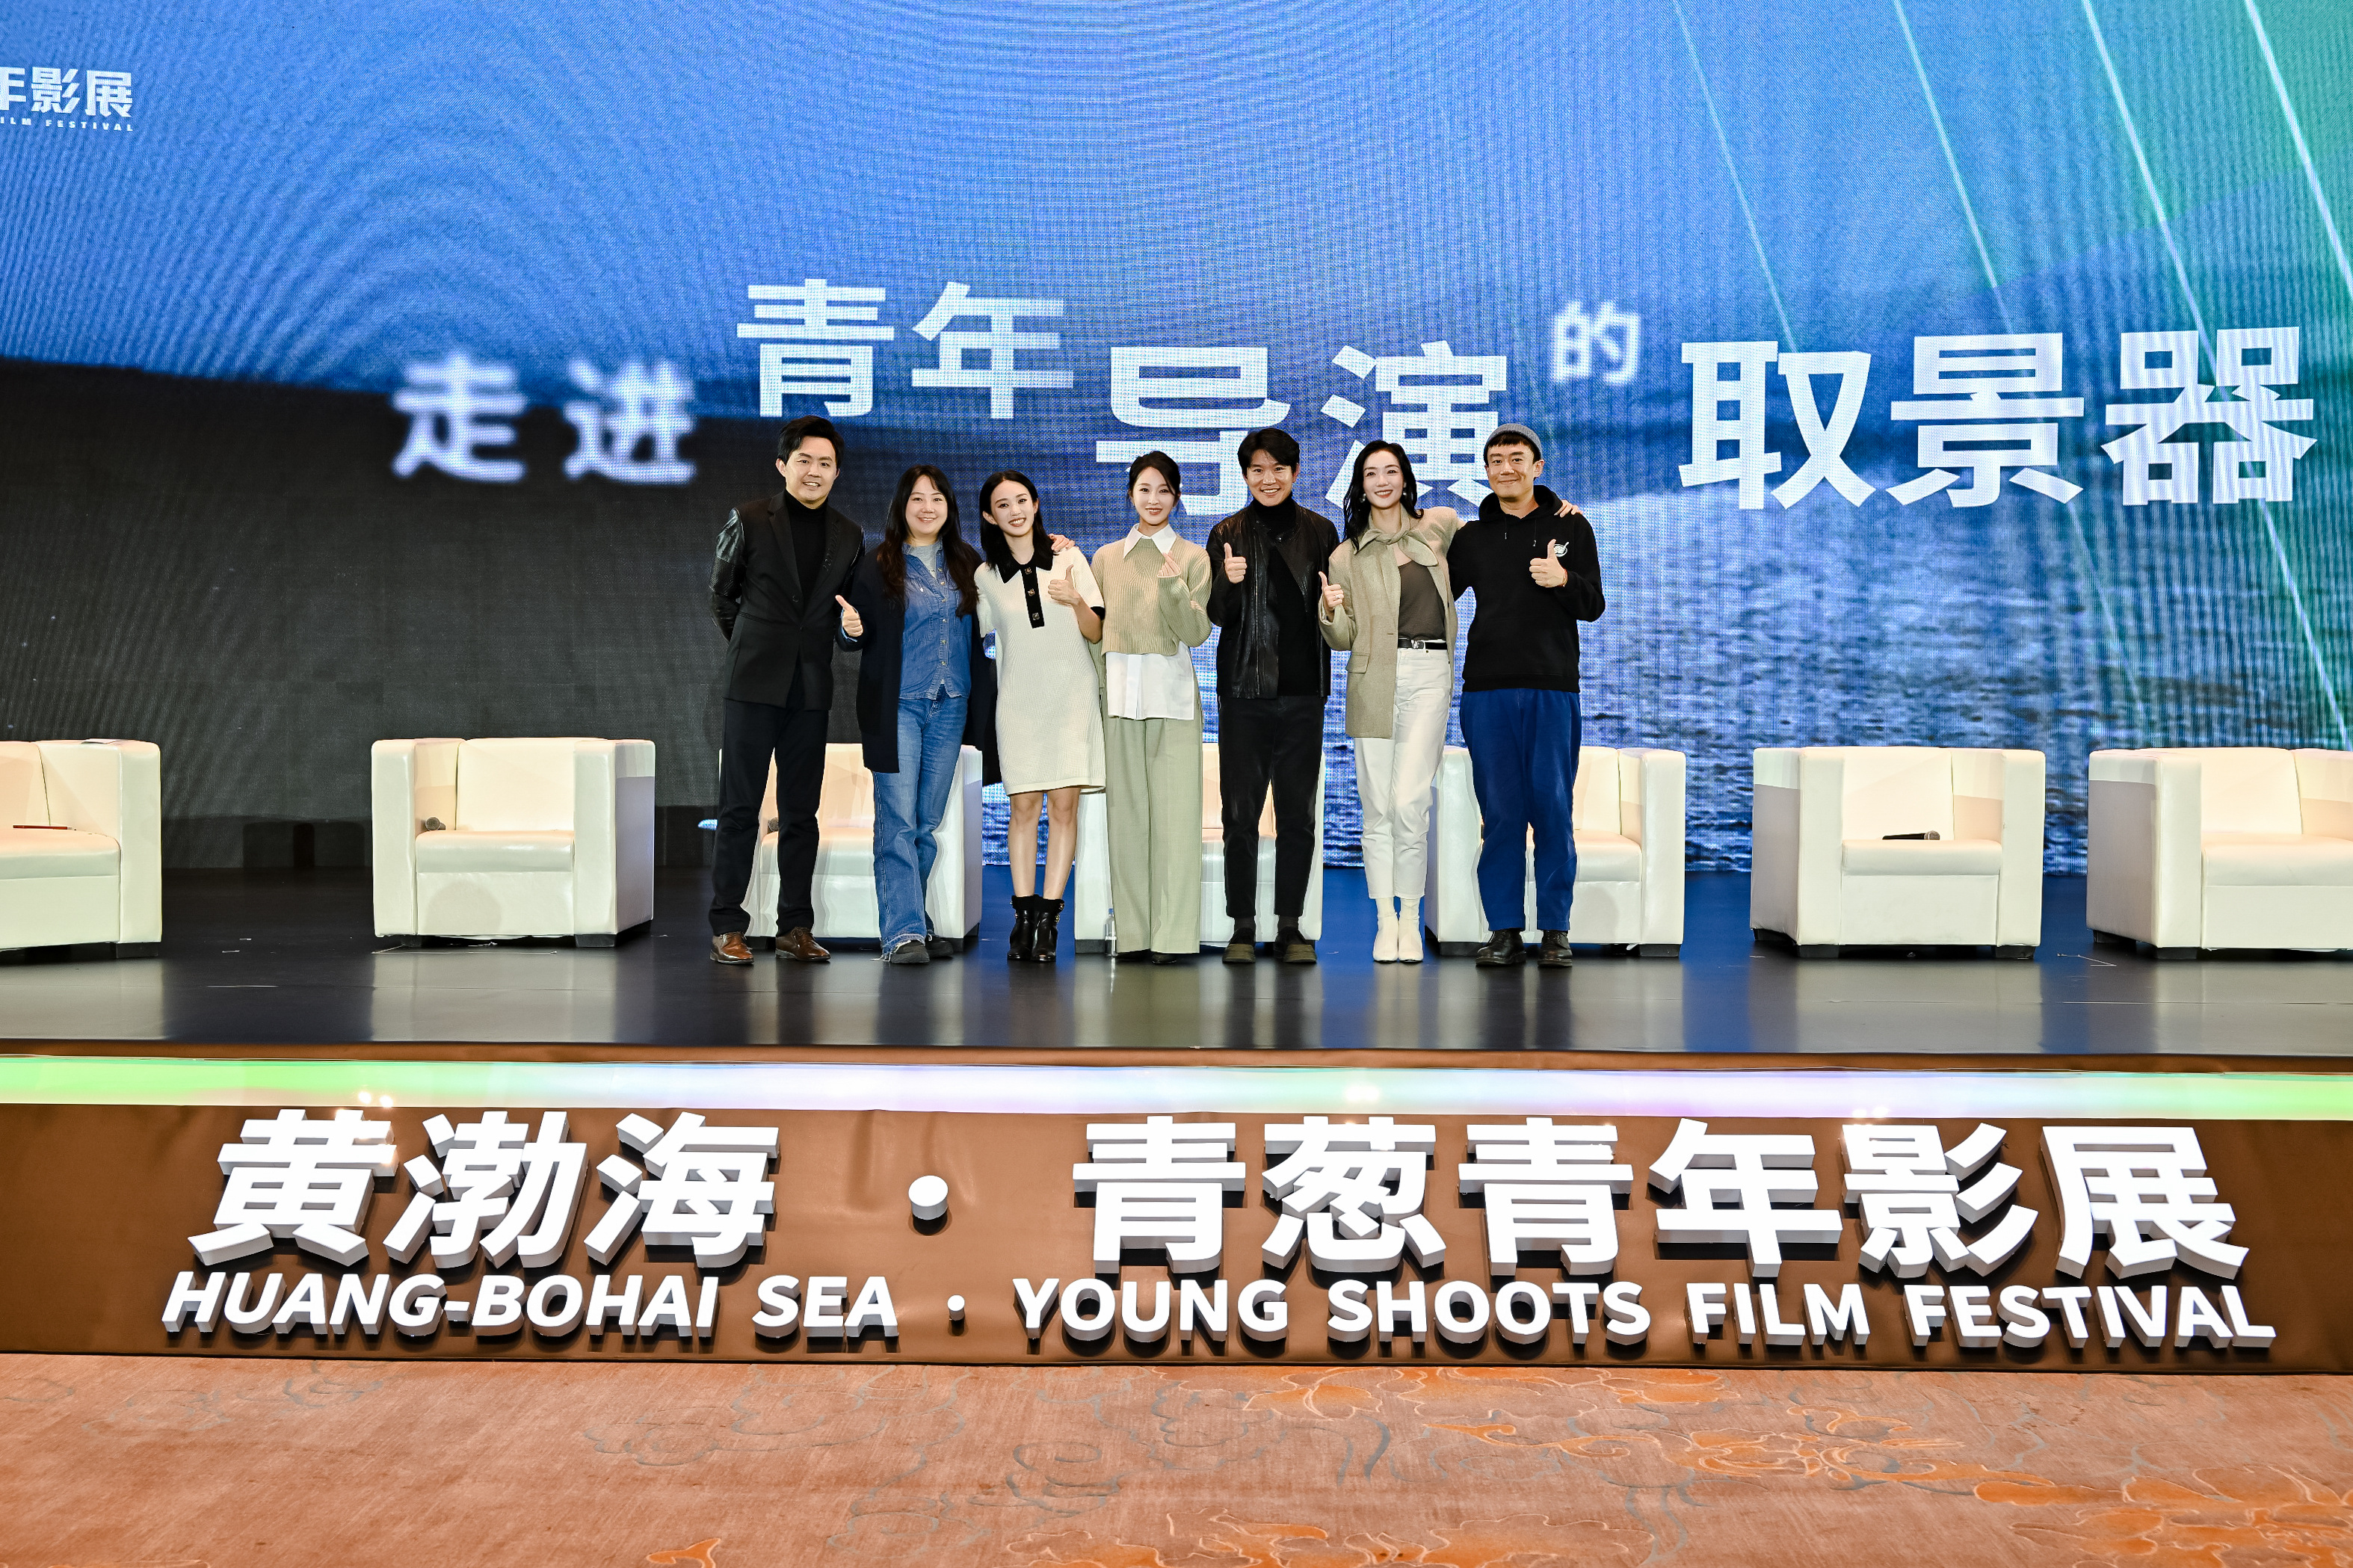 黄渤海·青葱青年影展开幕 黄建新谈《错位》受青睐